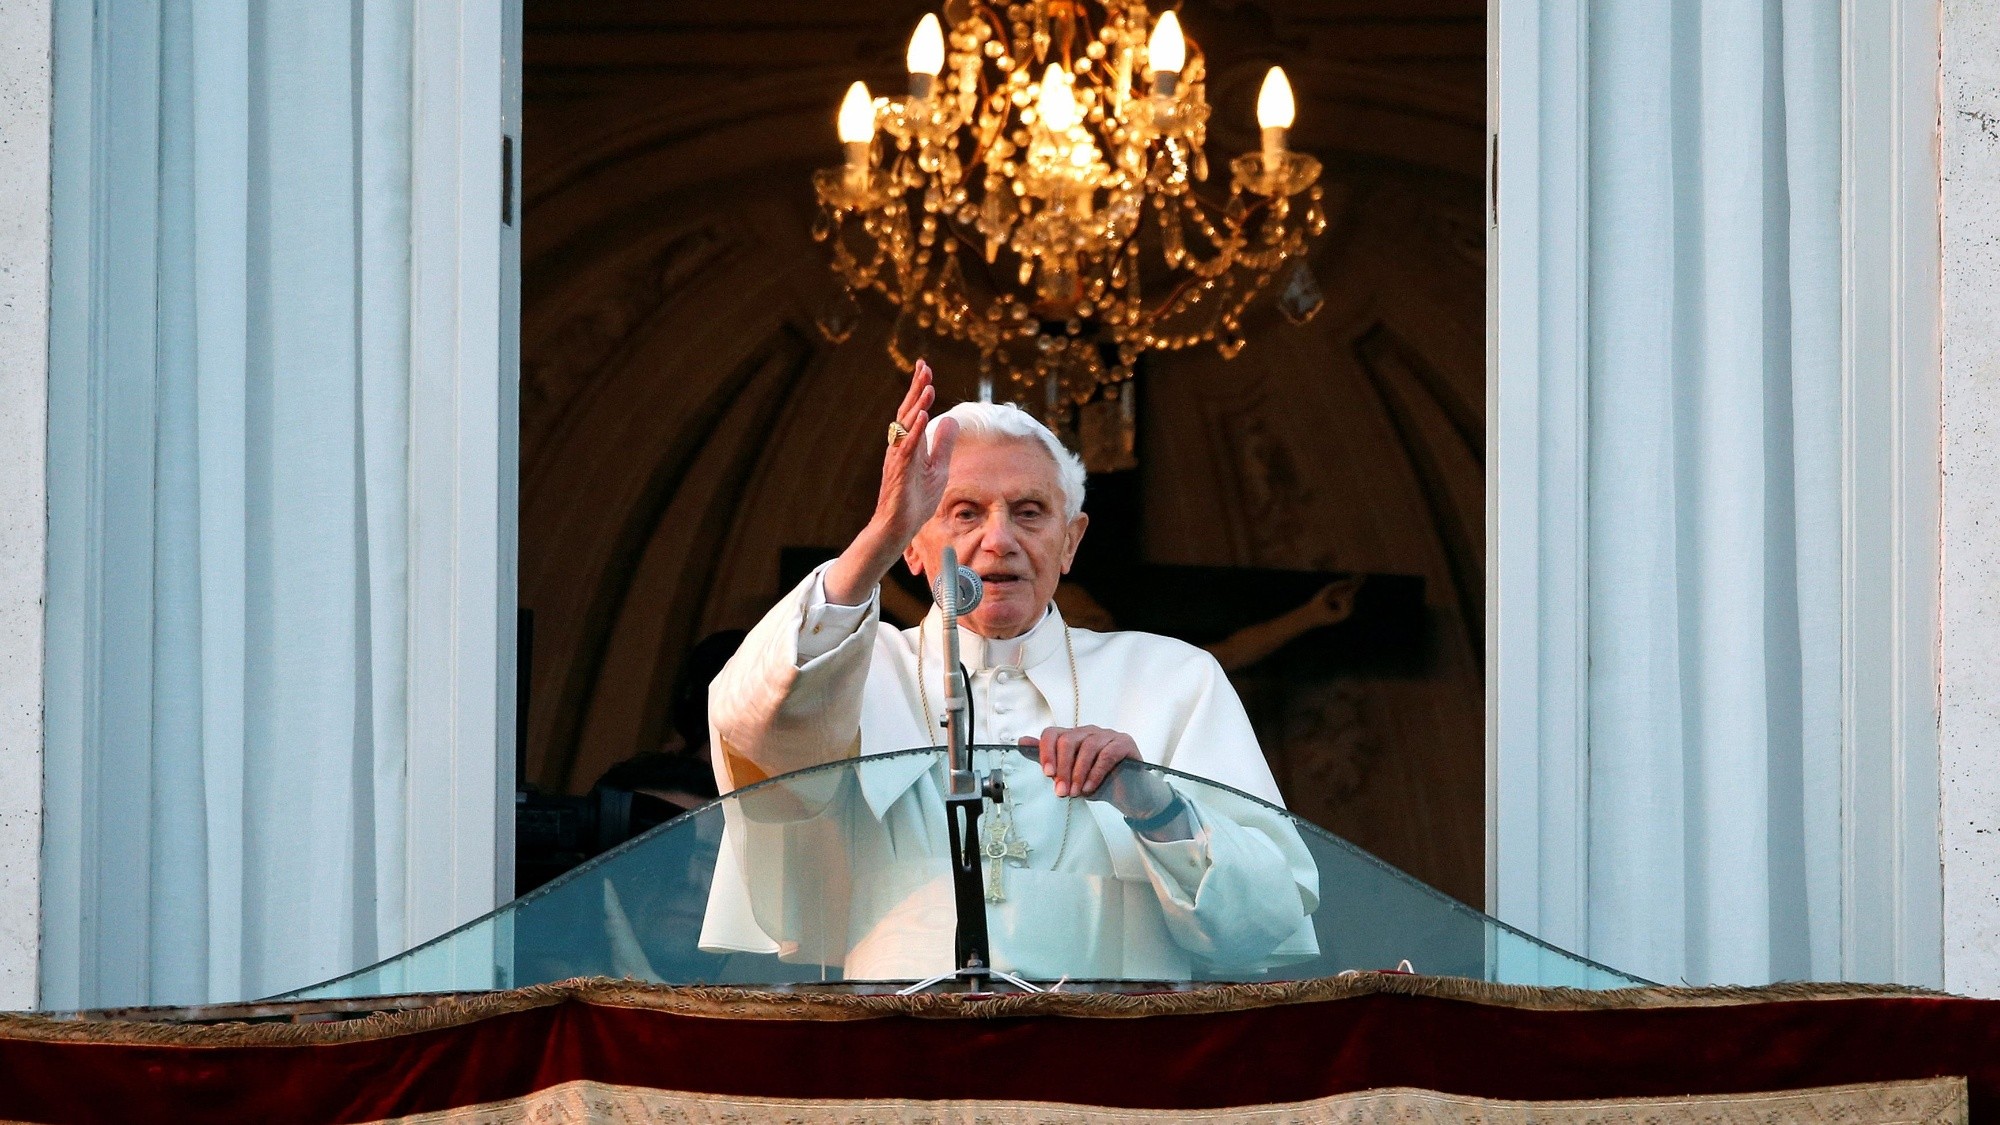 Reconoce el ex Papa Benedicto XVI abusos sexuales de sacerdote